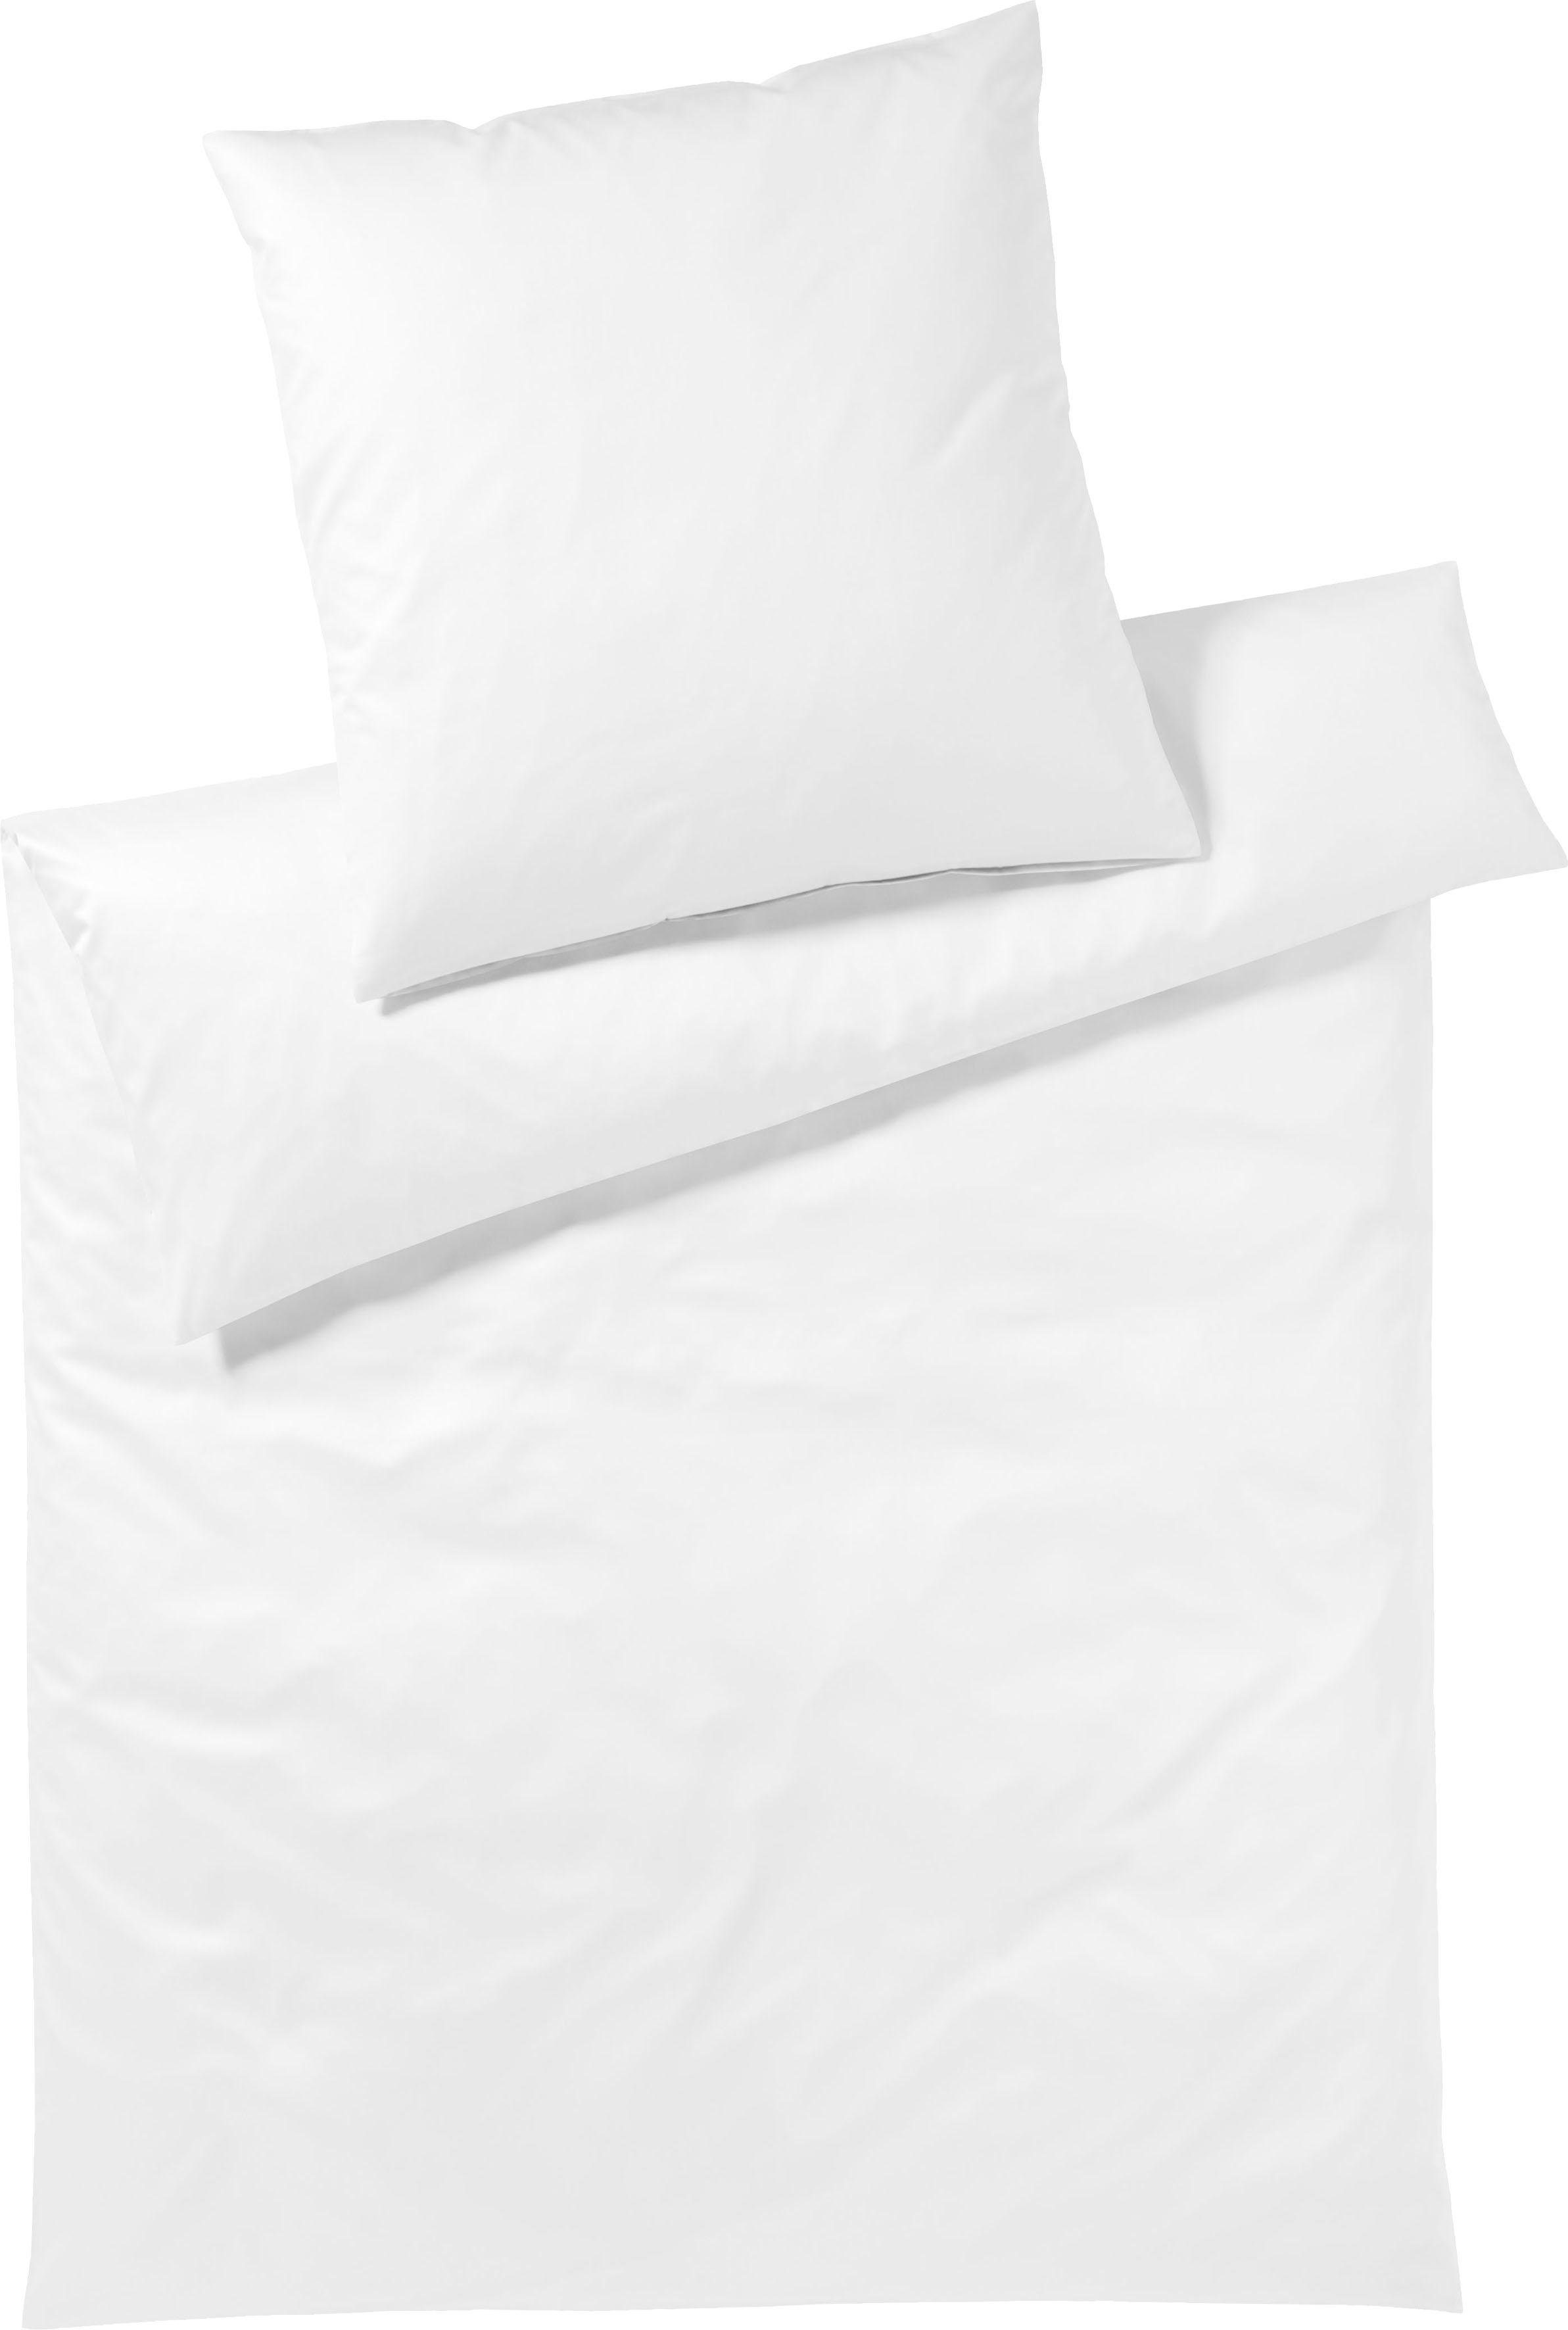 Bettwäsche Solid in Gr. 135x200 oder 155x220 cm, Elegante, Mako-Jersey, 2 teilig, Bettwäsche aus Baumwolle, elegante Bettwäsche mit Reißverschluss